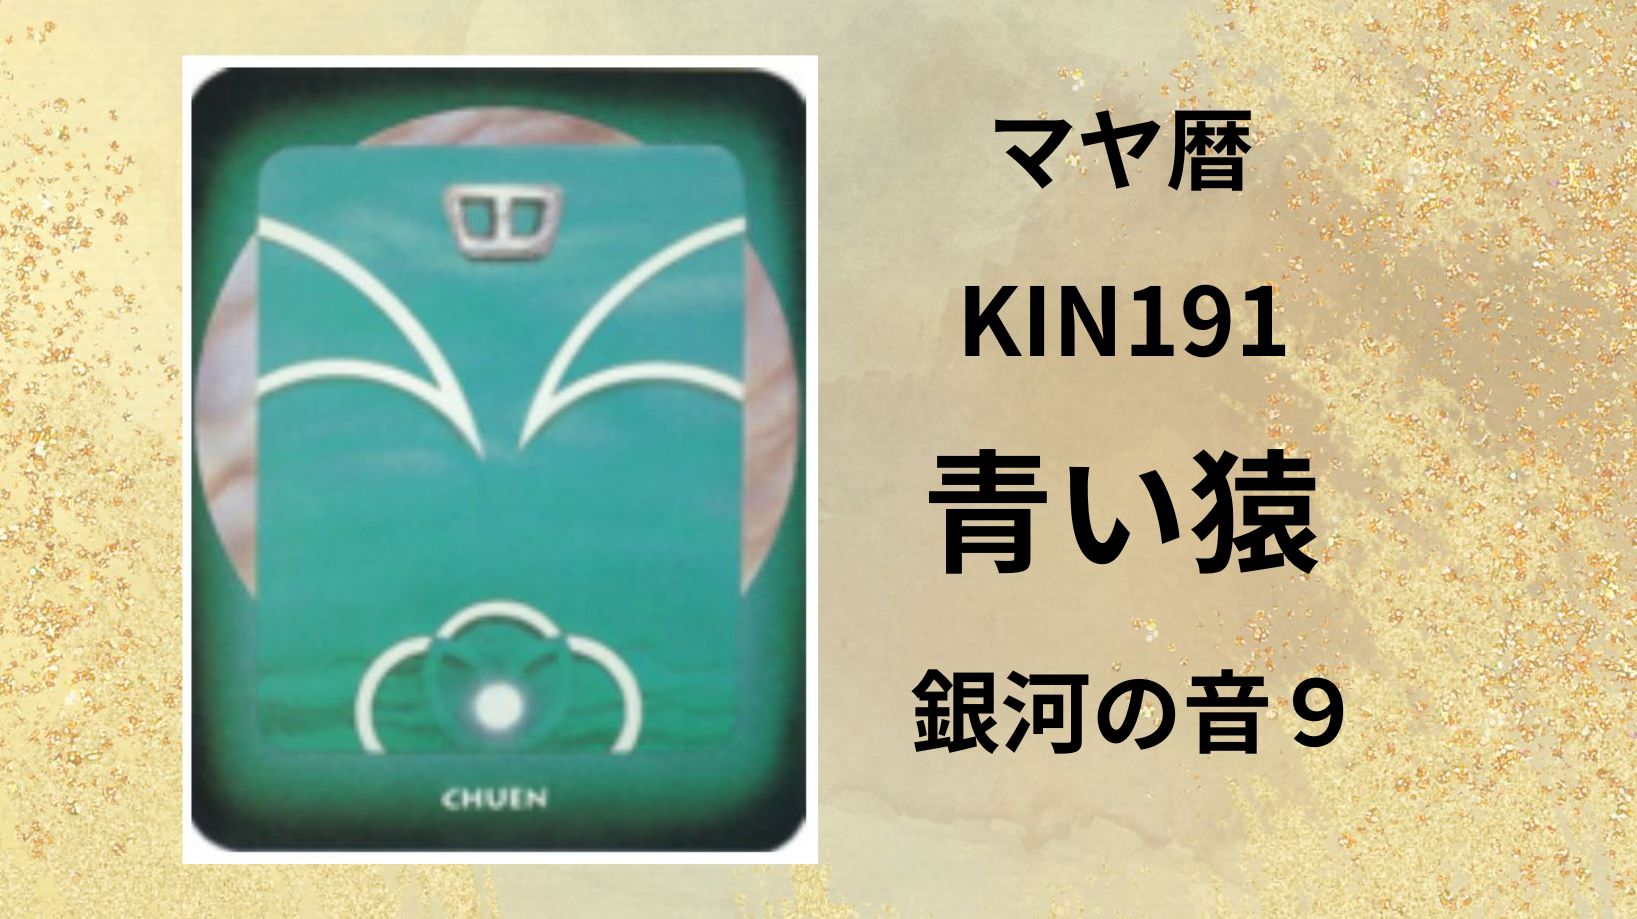 【マヤ暦-今日はどんな日】KIN191「青い猿」のメッセージ